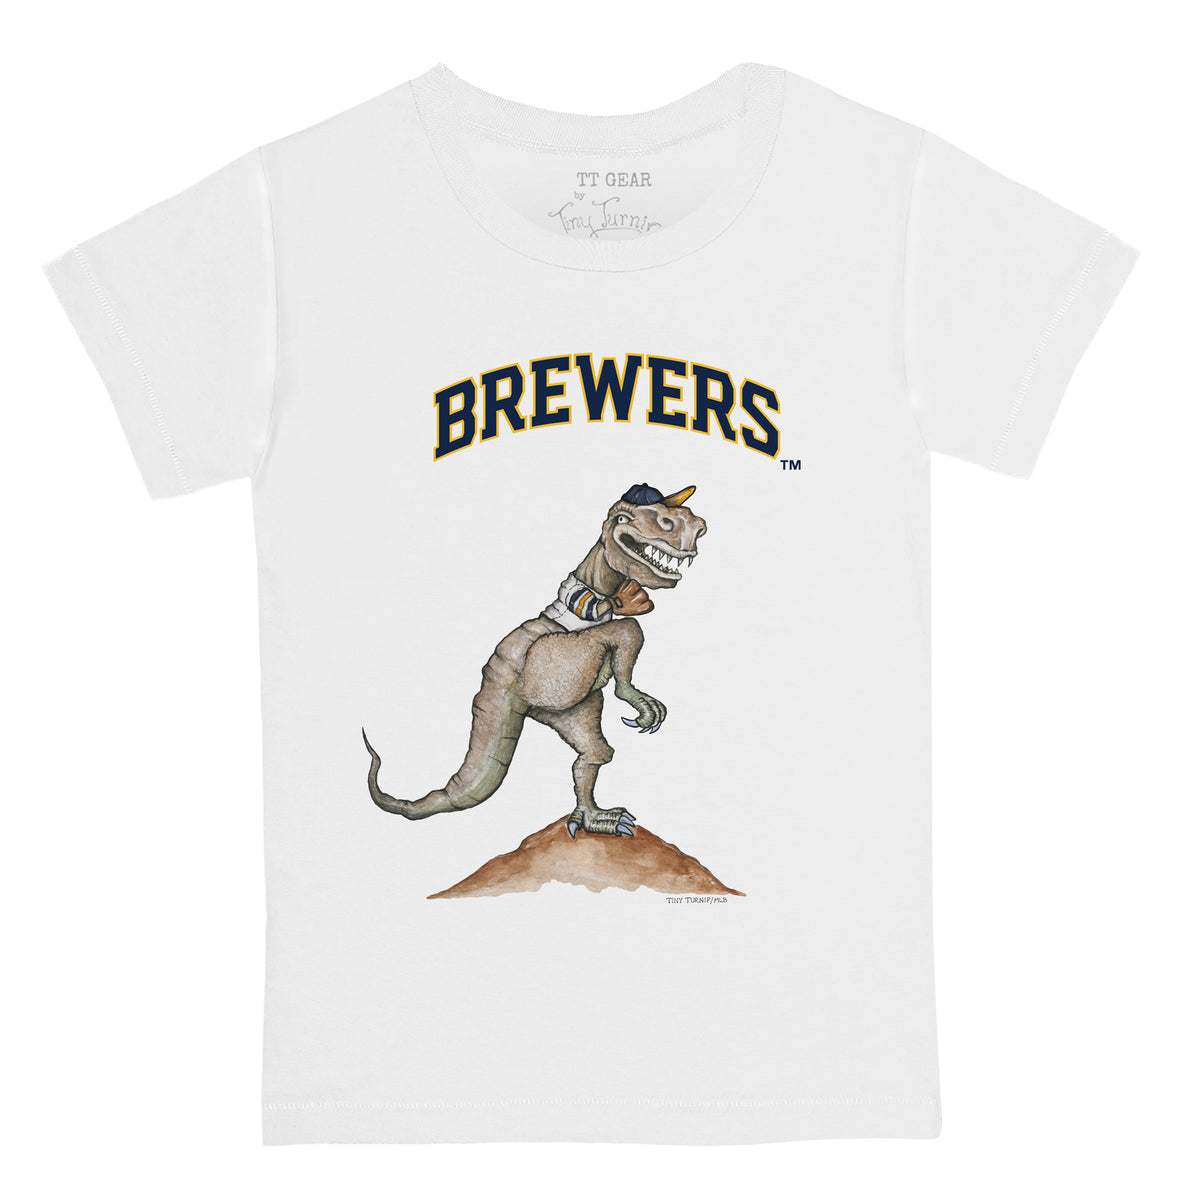 Milwaukee Brewers TT Rex Tee Shirt